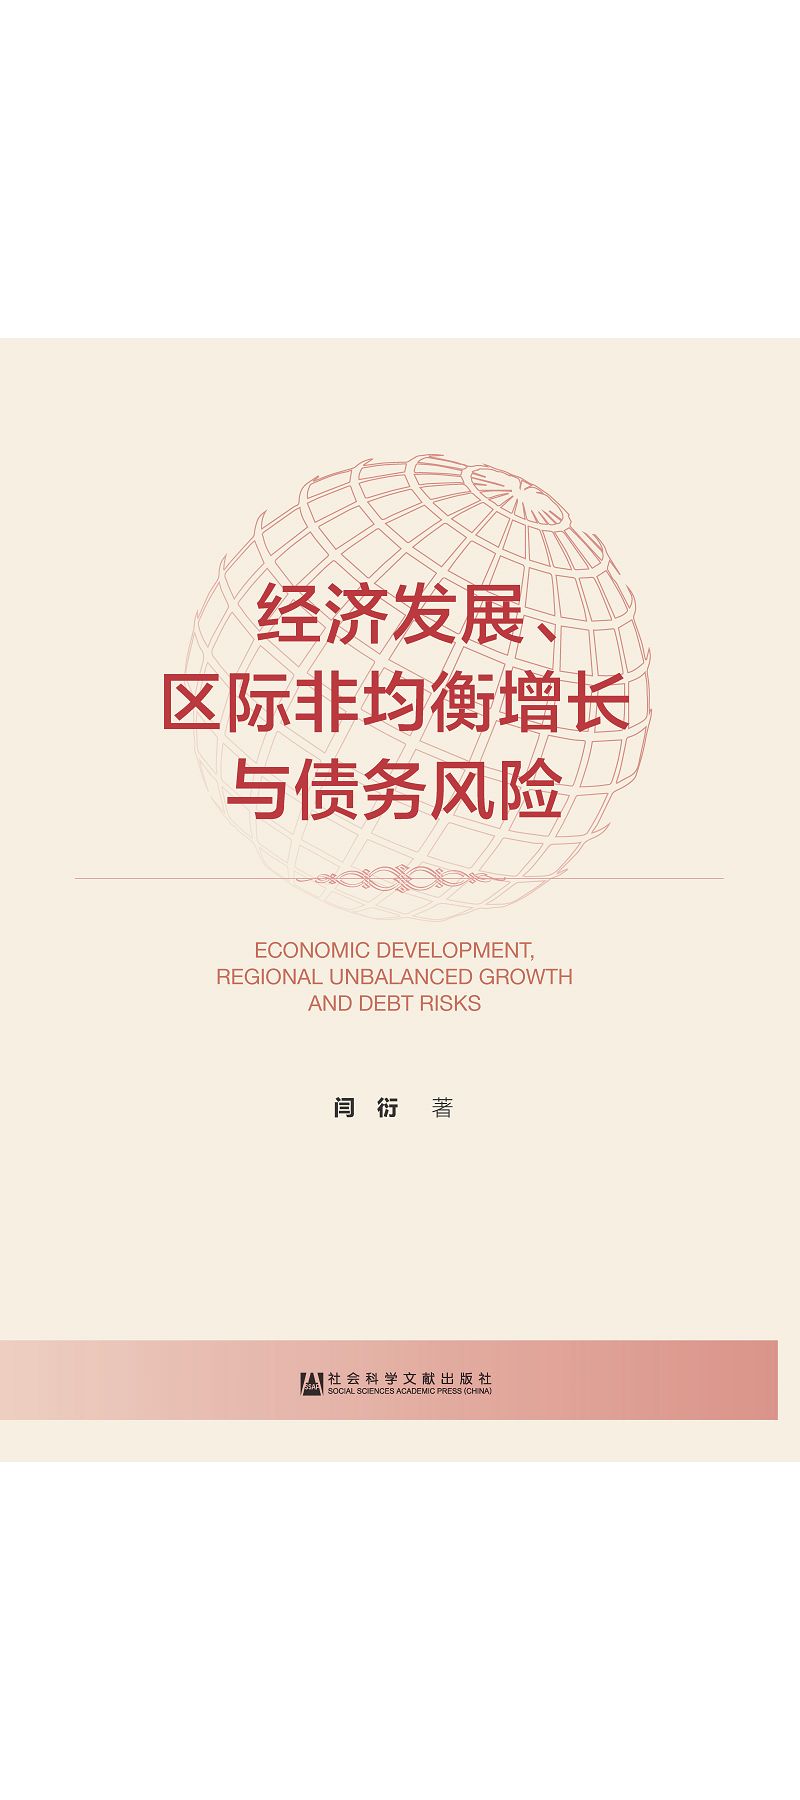 經濟發展、區際非均衡增長與債務風險 (電子書)